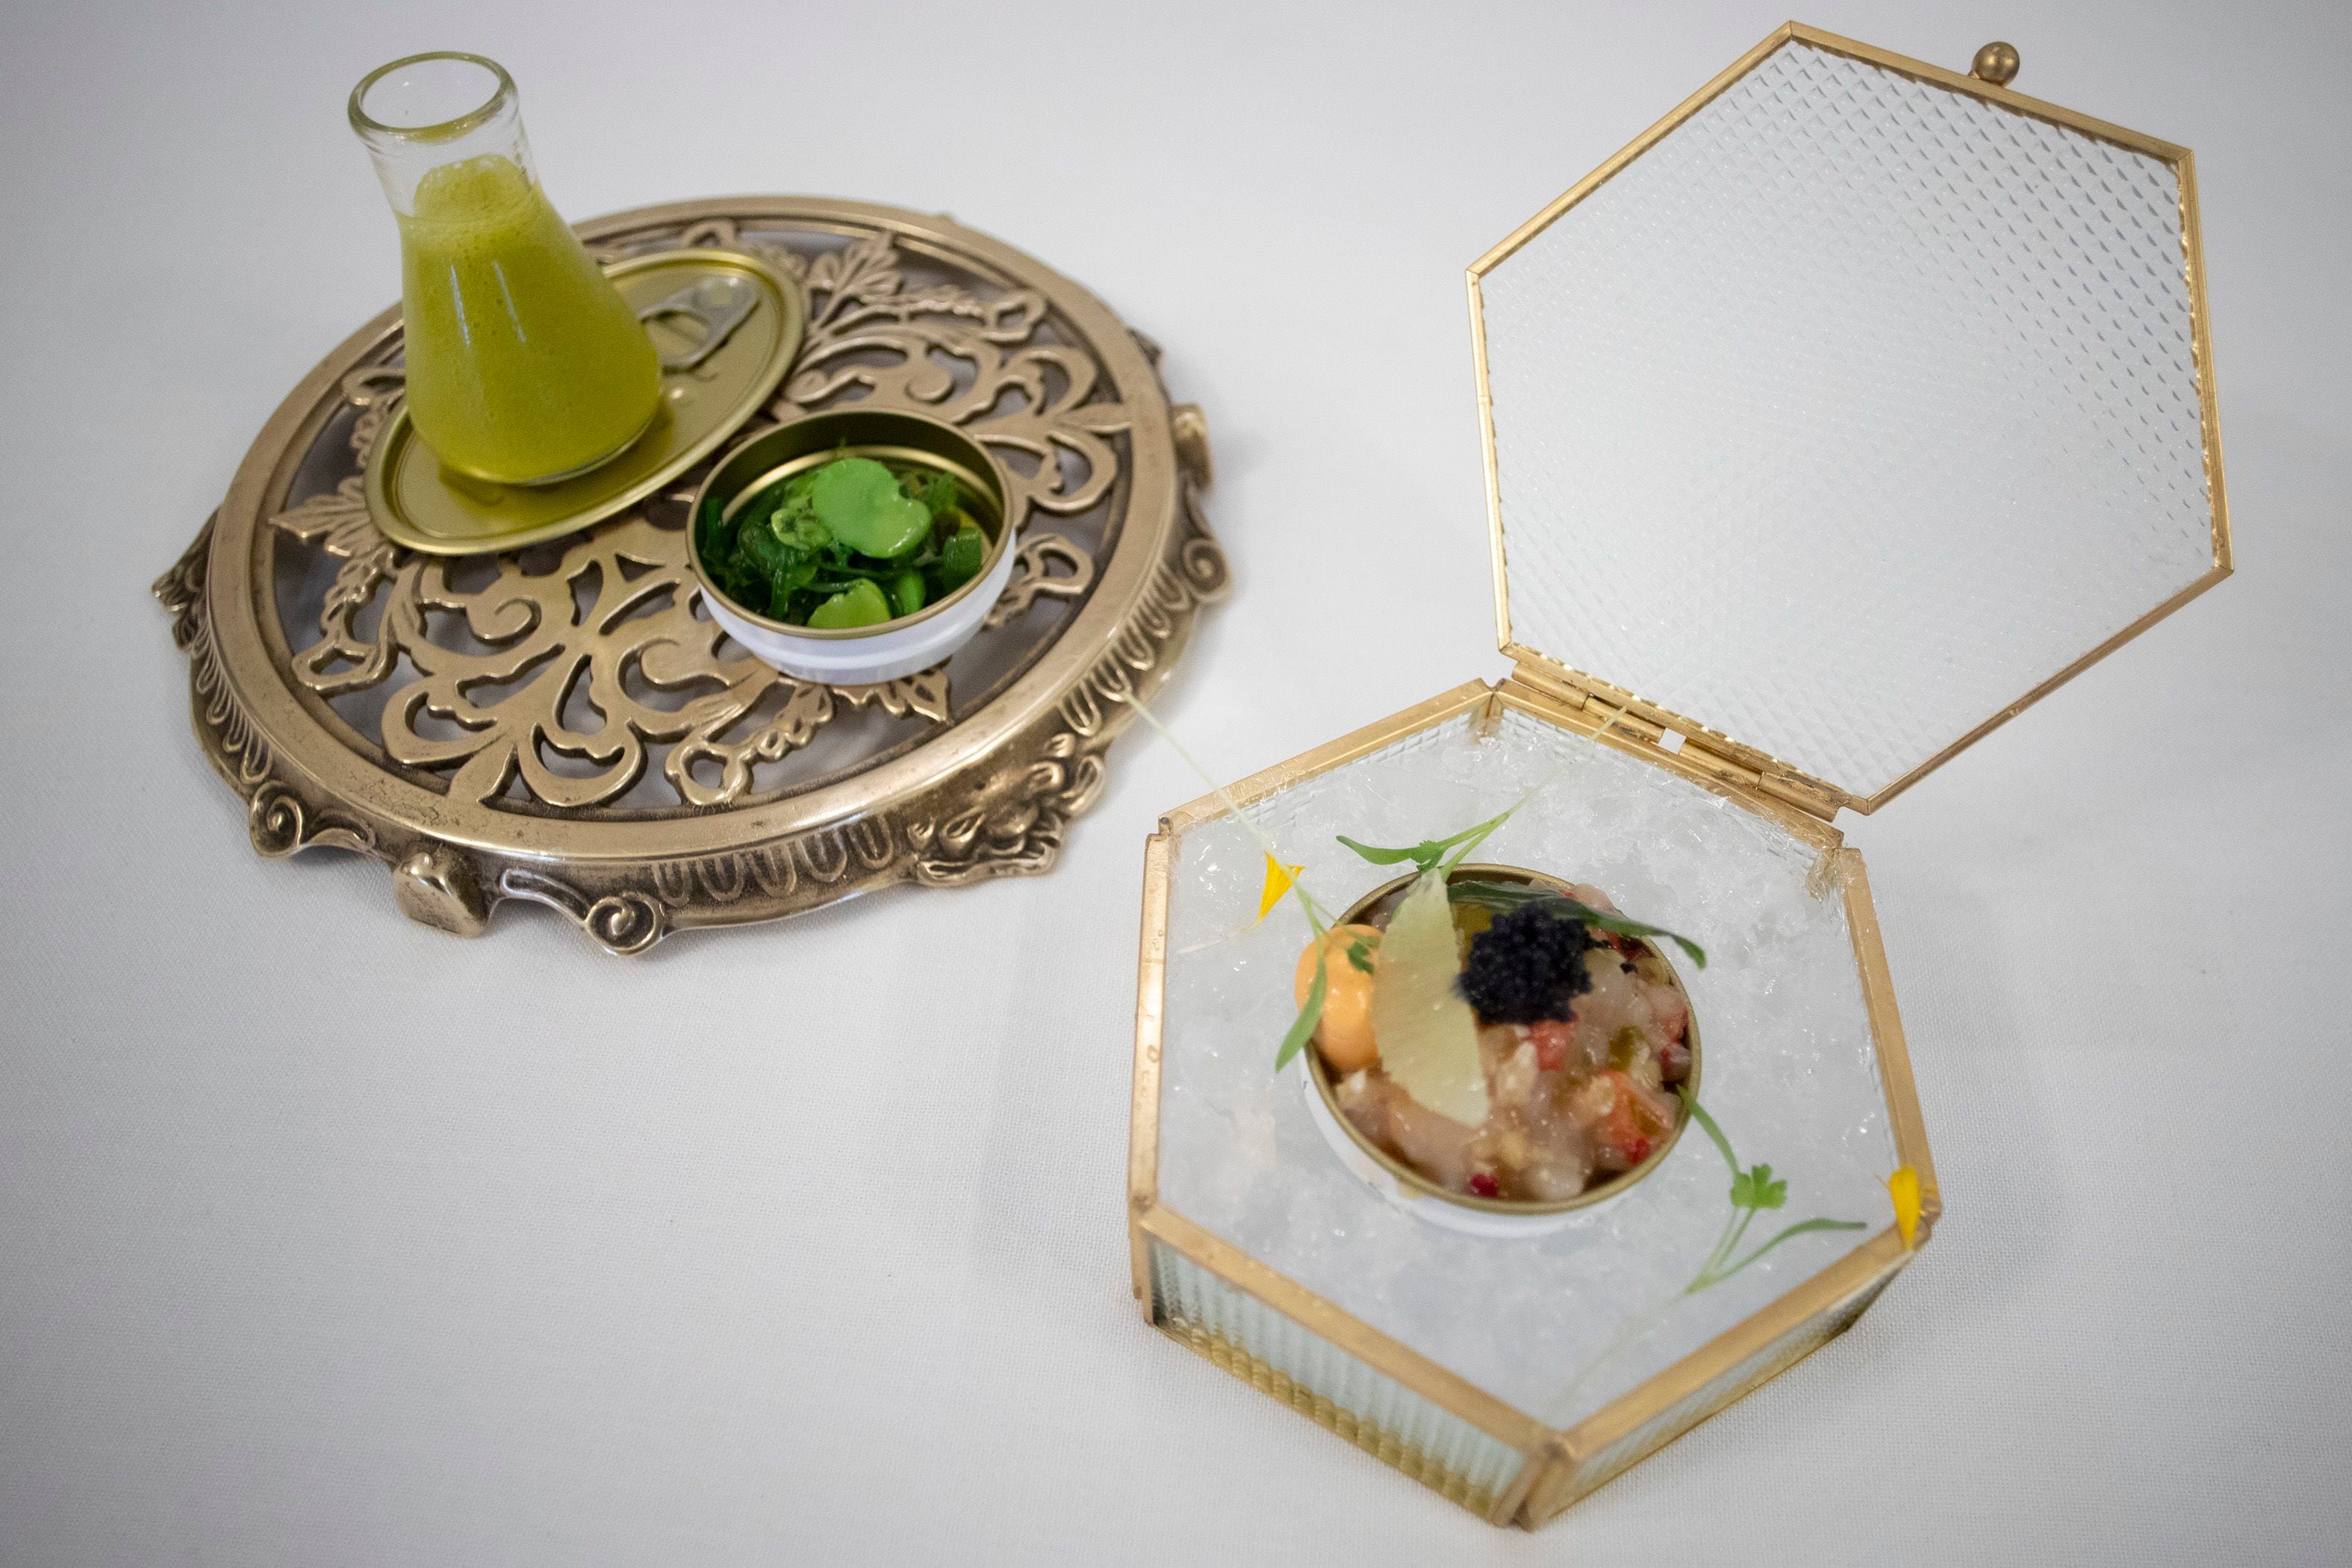 Crema de lemon grass con ensalada y tartar de bogavante, marisco y caviar del estaurante Ziryab, de la chef Najak Kaanache.